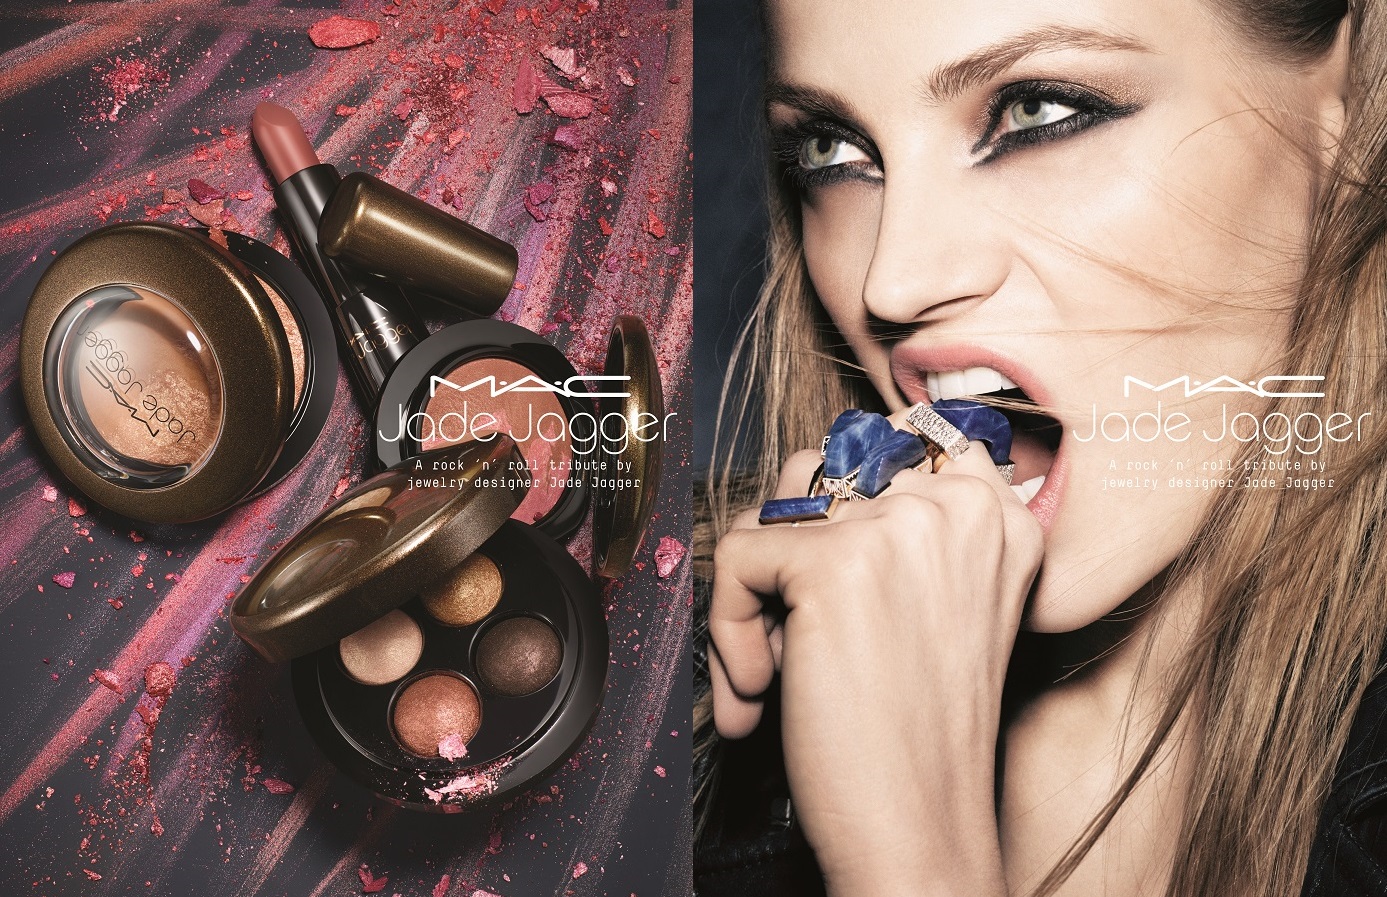 Tendenze make-up autunno inverno 2017-2018: la collezione M∙A∙C Jade Jagger by MAC Cosmetics